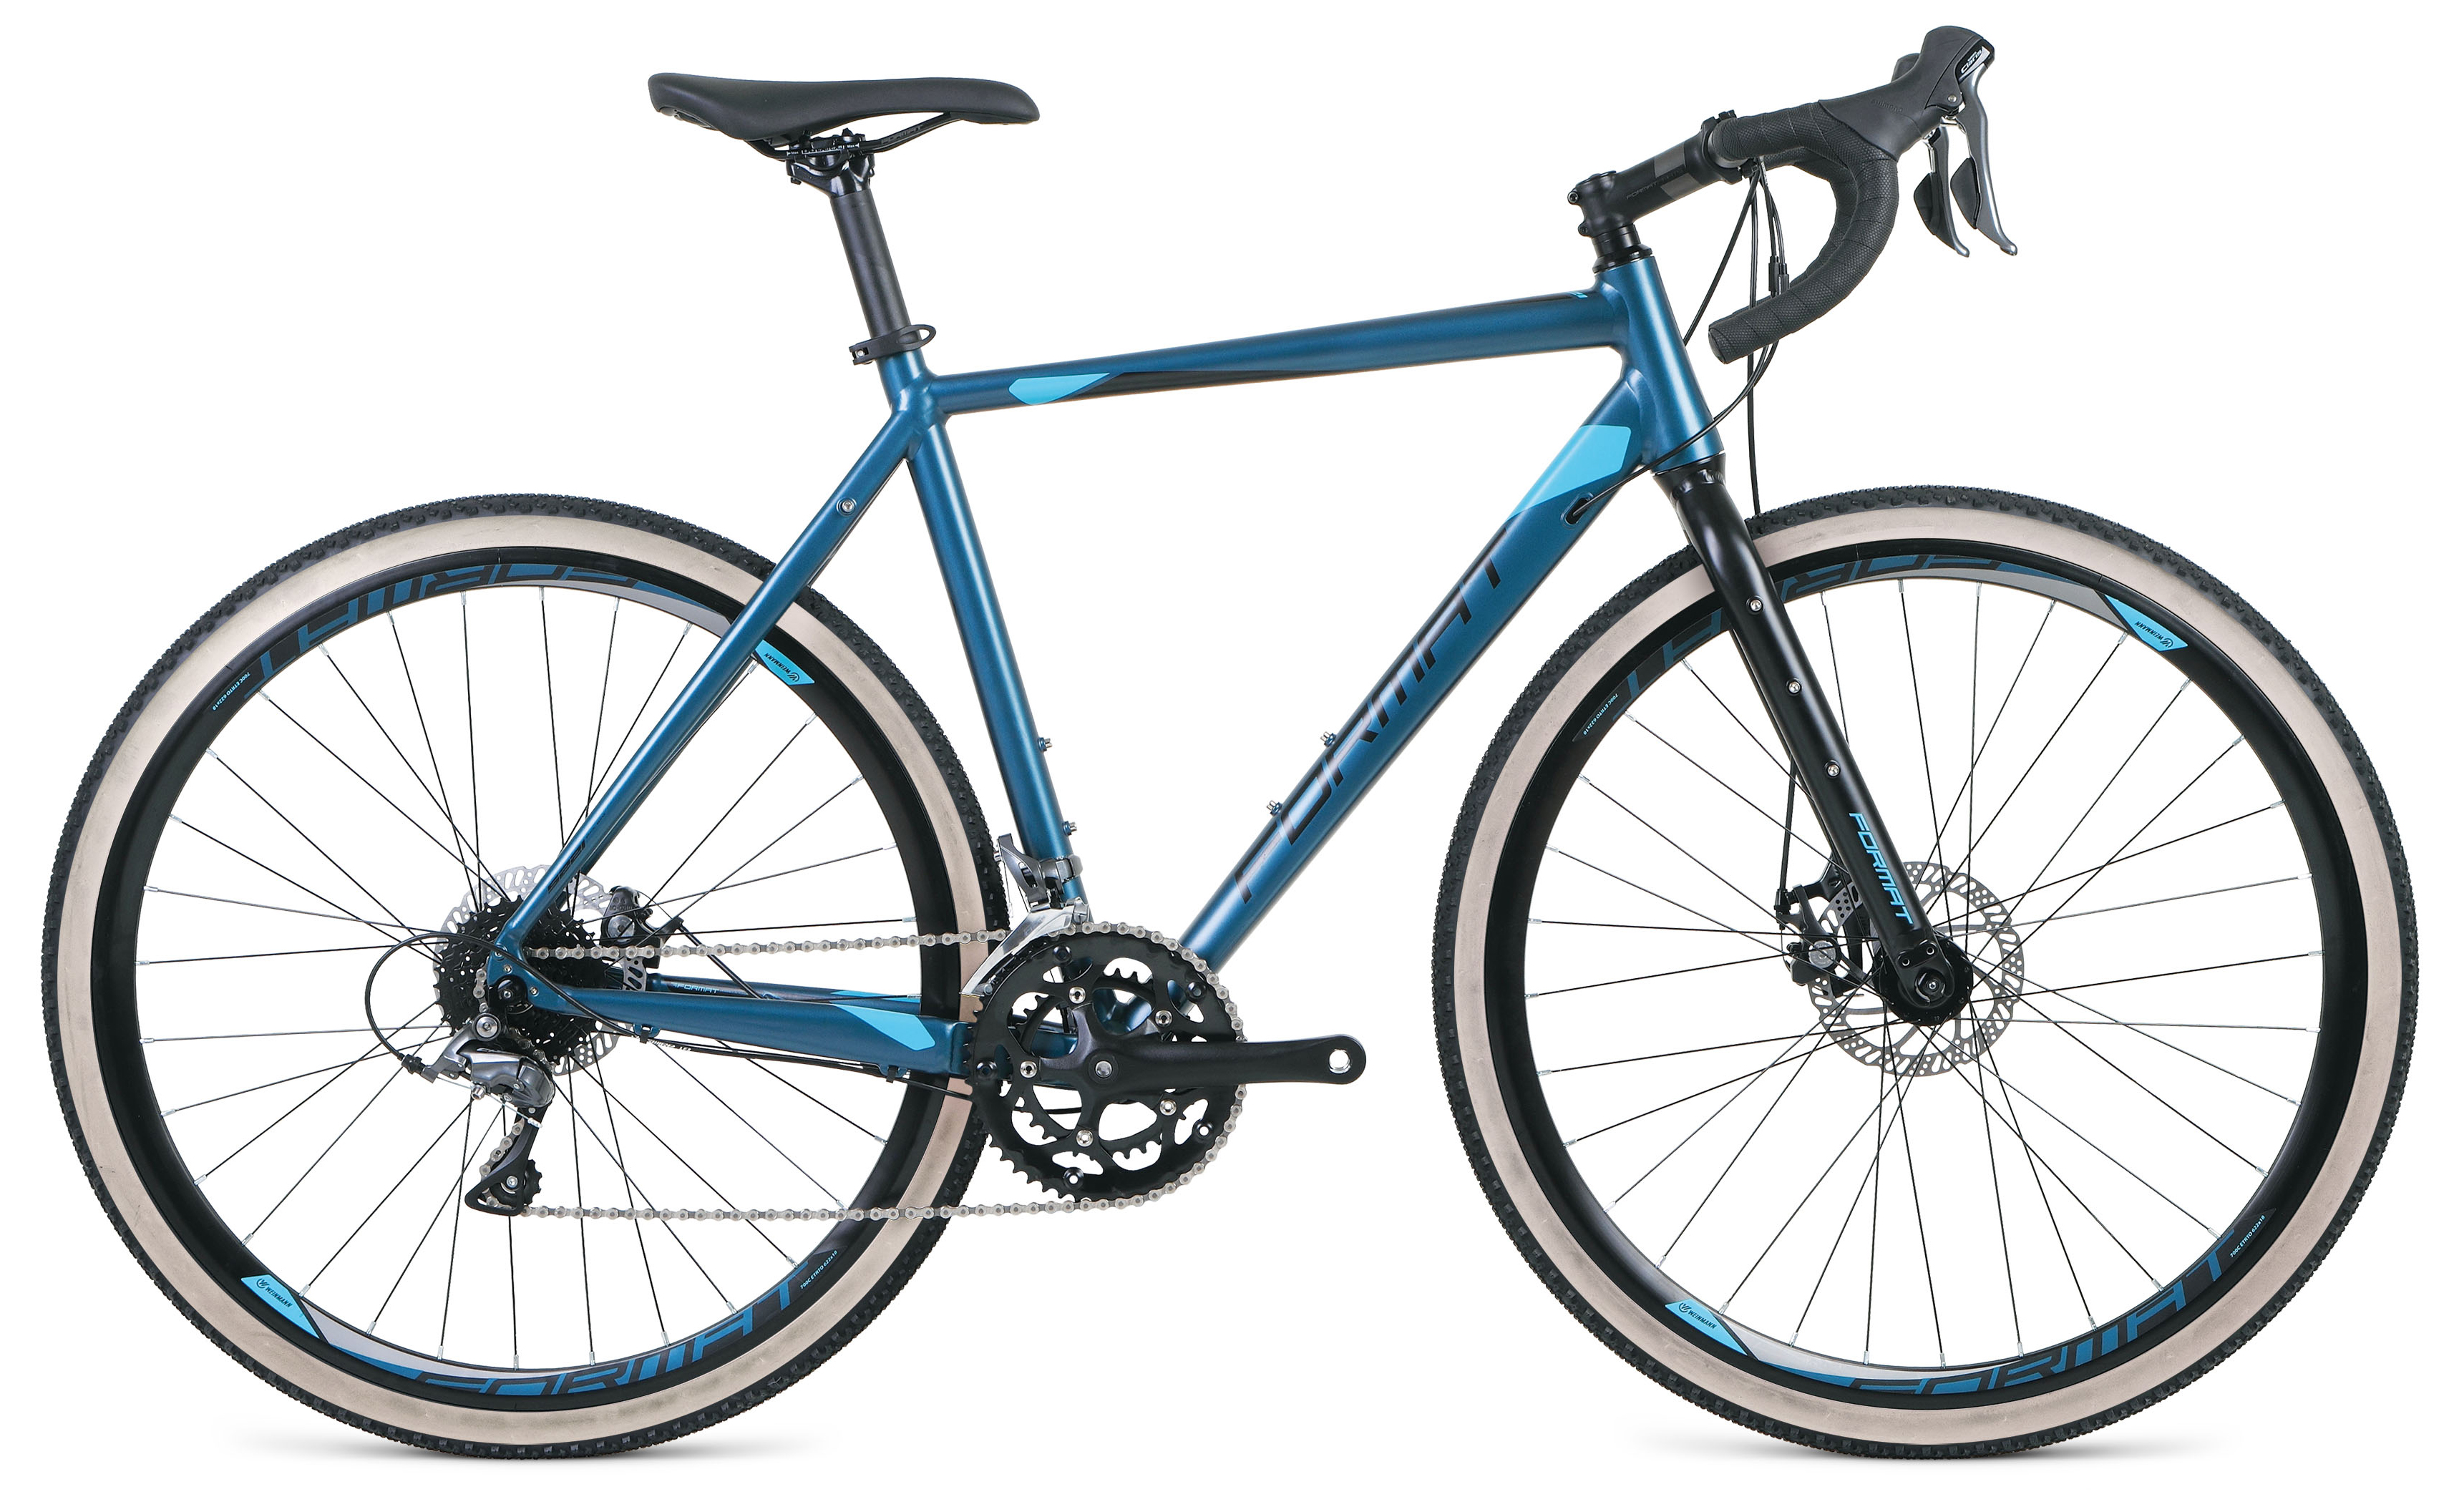  Отзывы о Шоссейном велосипеде Format 5221 2020